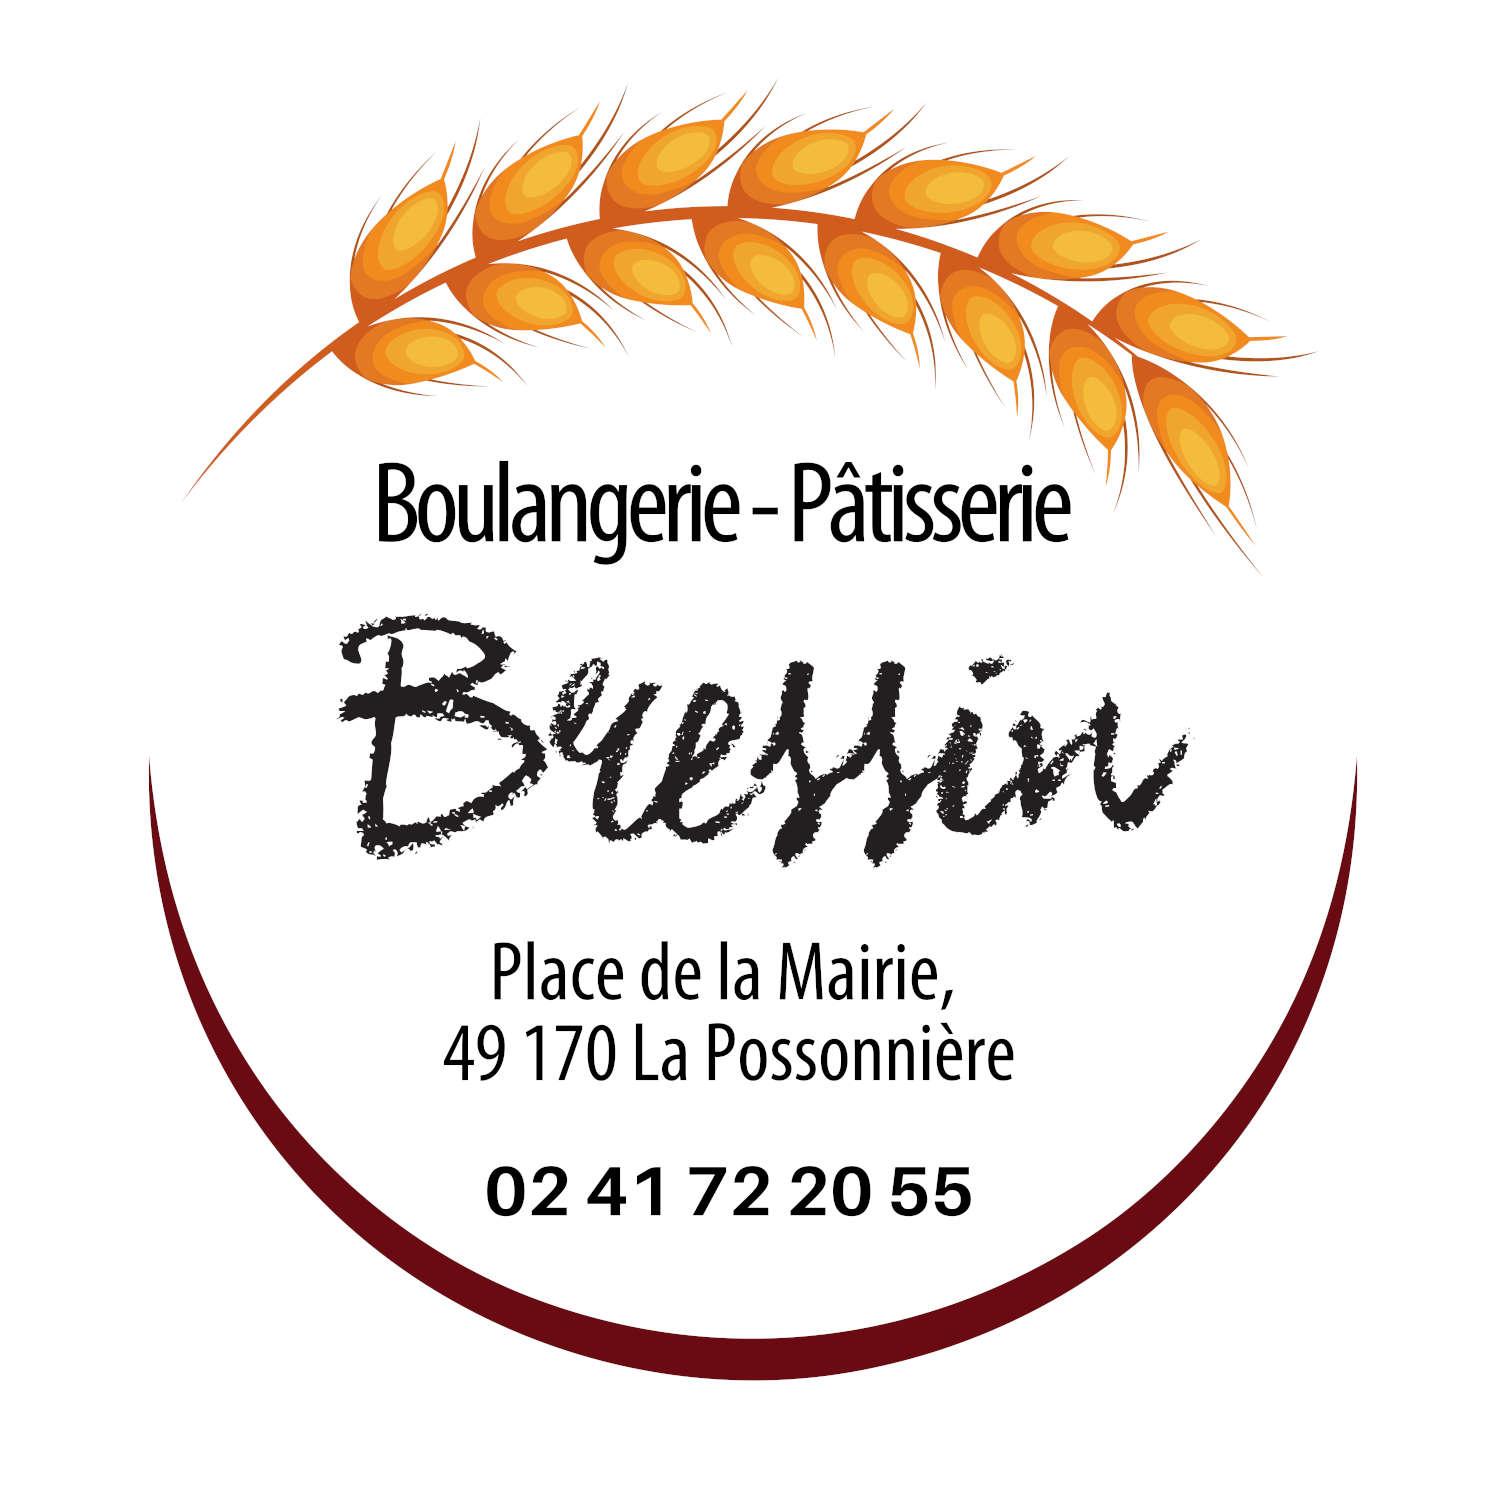 Sponsor Boulangerie Bressin